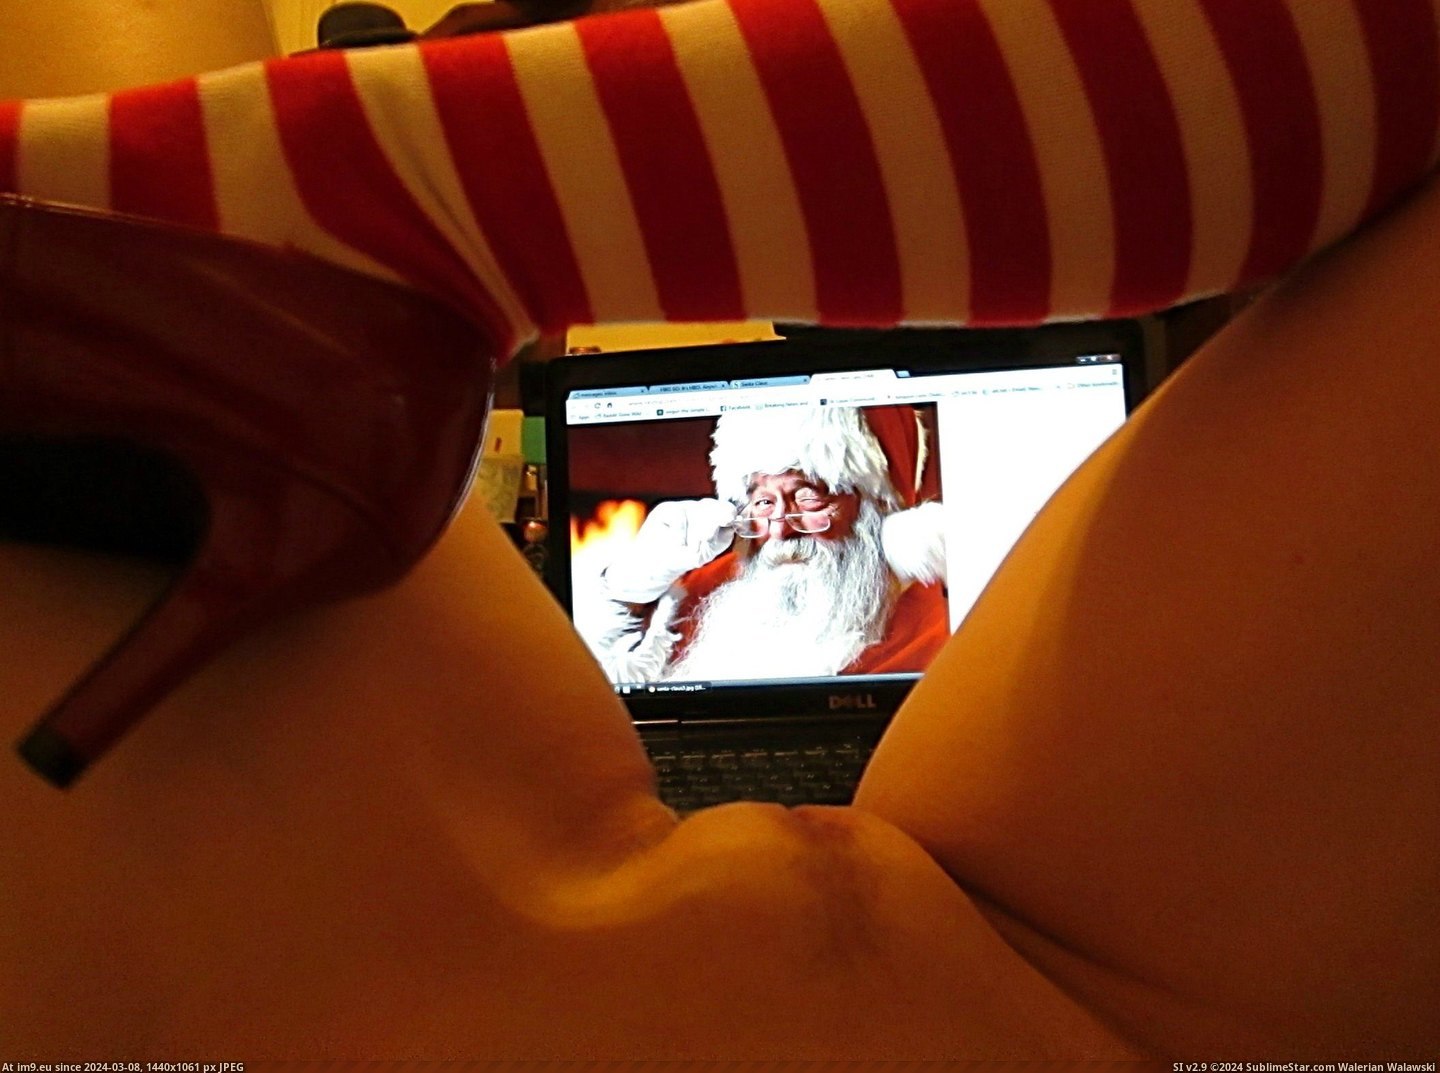 #Saw #Santa #Clause #Mommy #Lashing [Gonewild] I Saw Mommy {F}lashing Santa Clause Pic. (Image of album My r/GONEWILD favs))